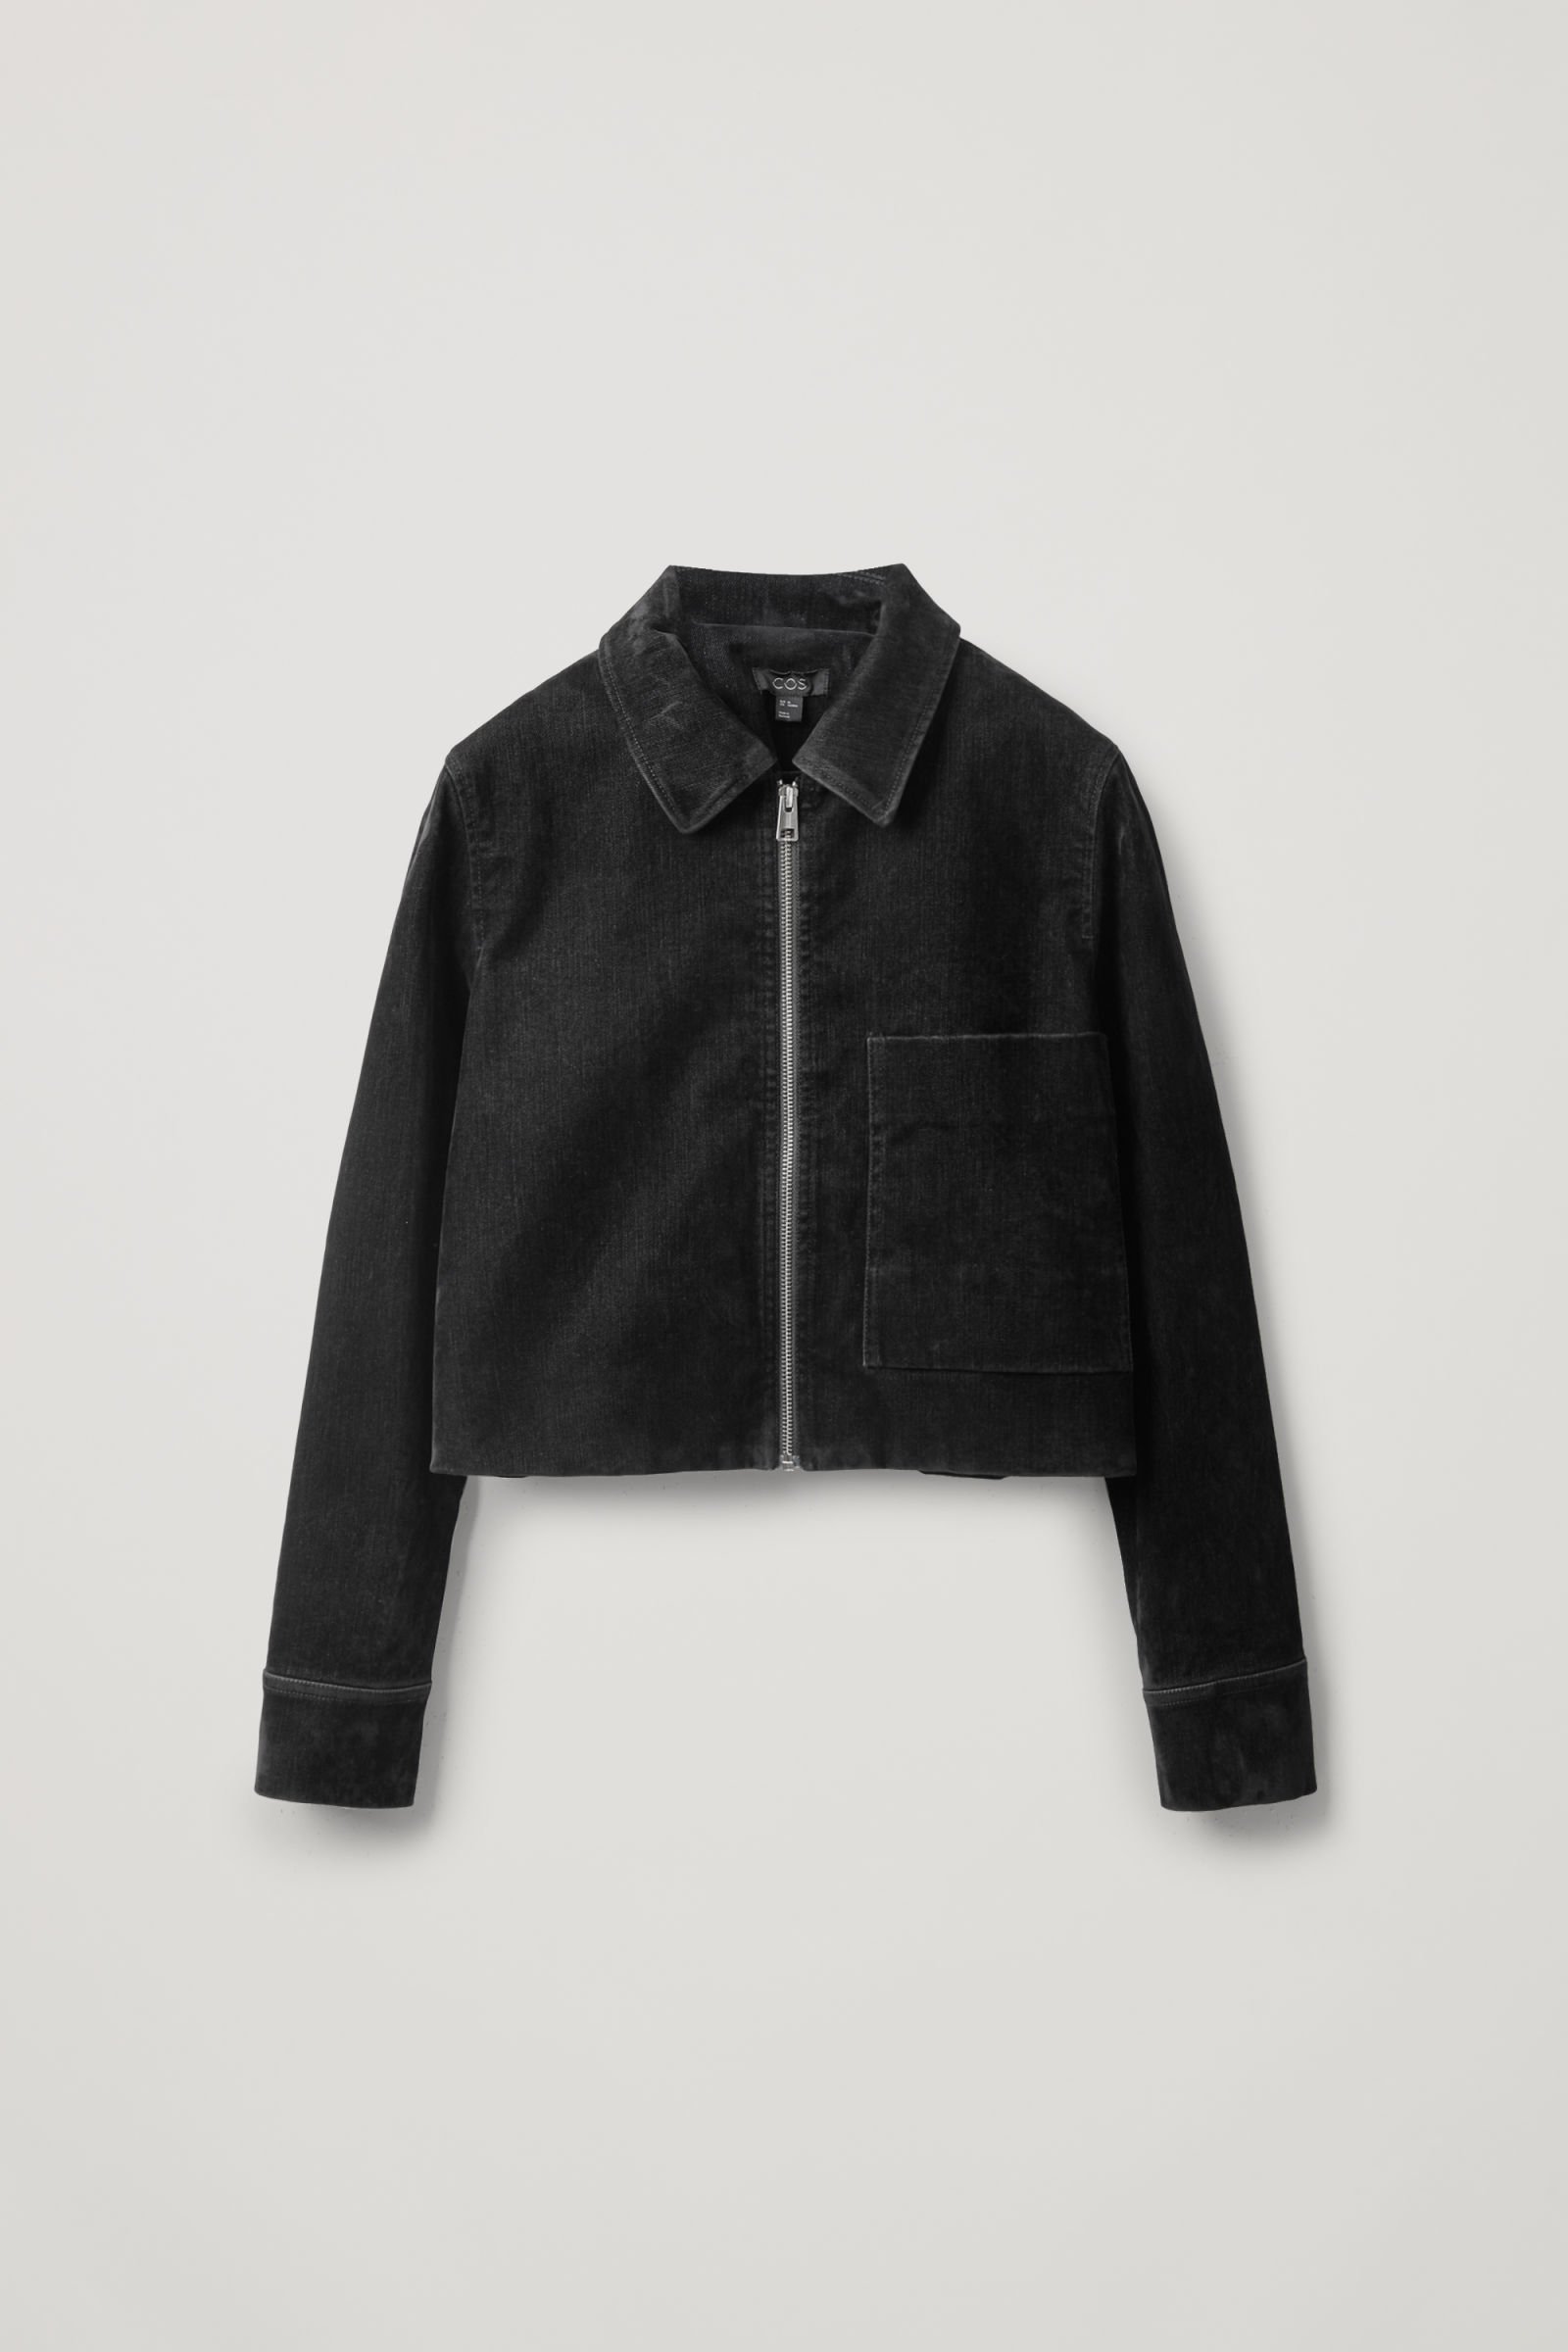 COS Cropped Velvet Denim Jacket in black | Endource